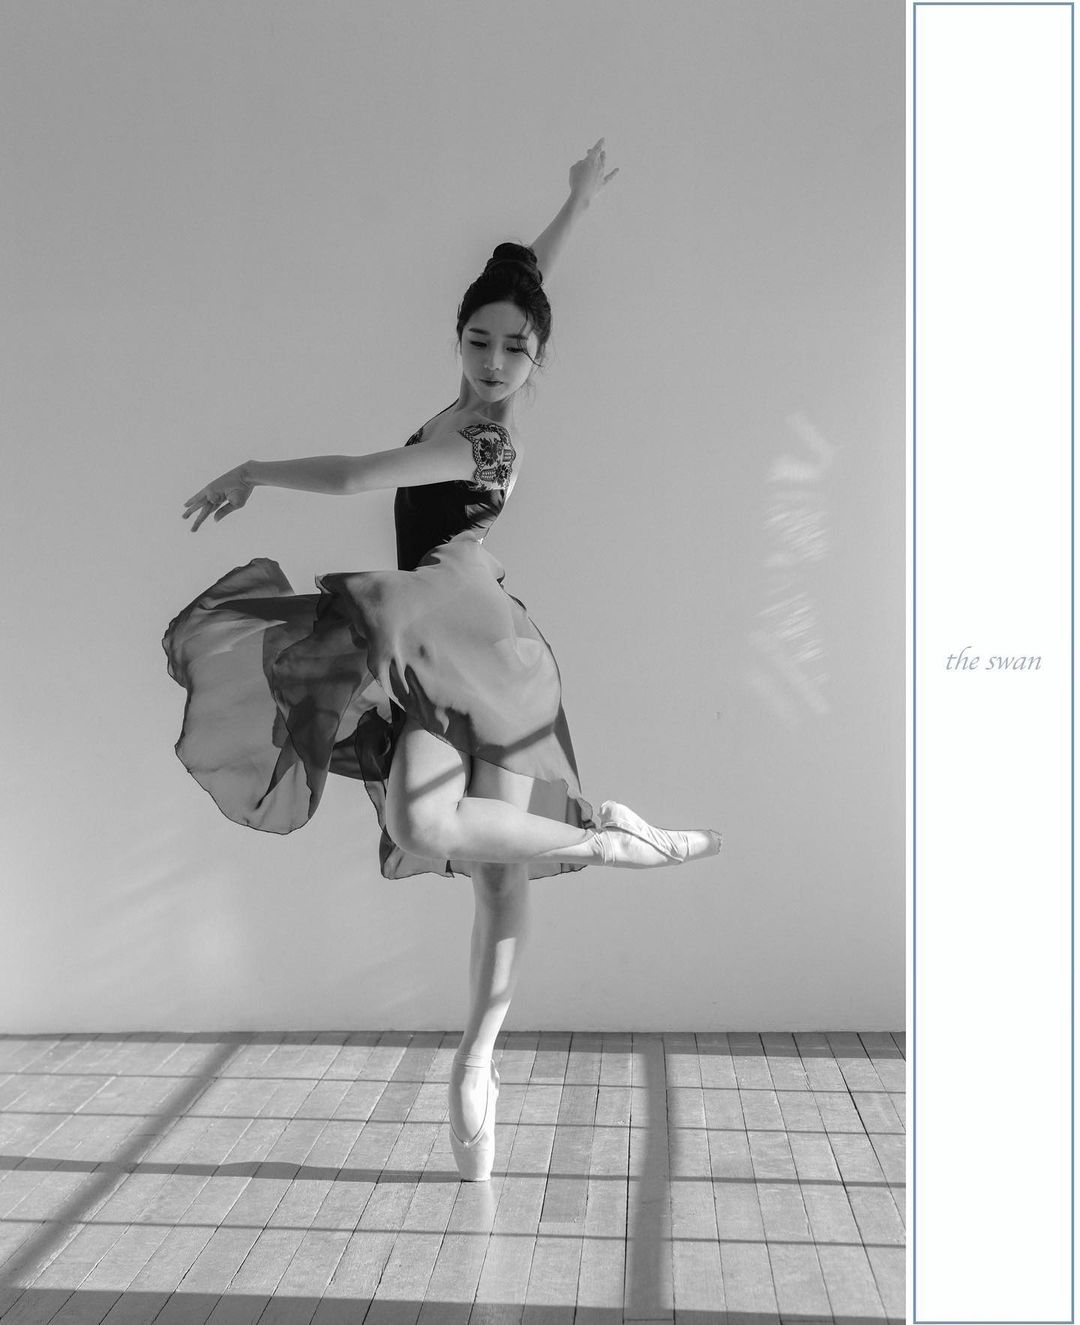  ballet dancer”
.
.
.
.
#ballet #balletdancer #ba...